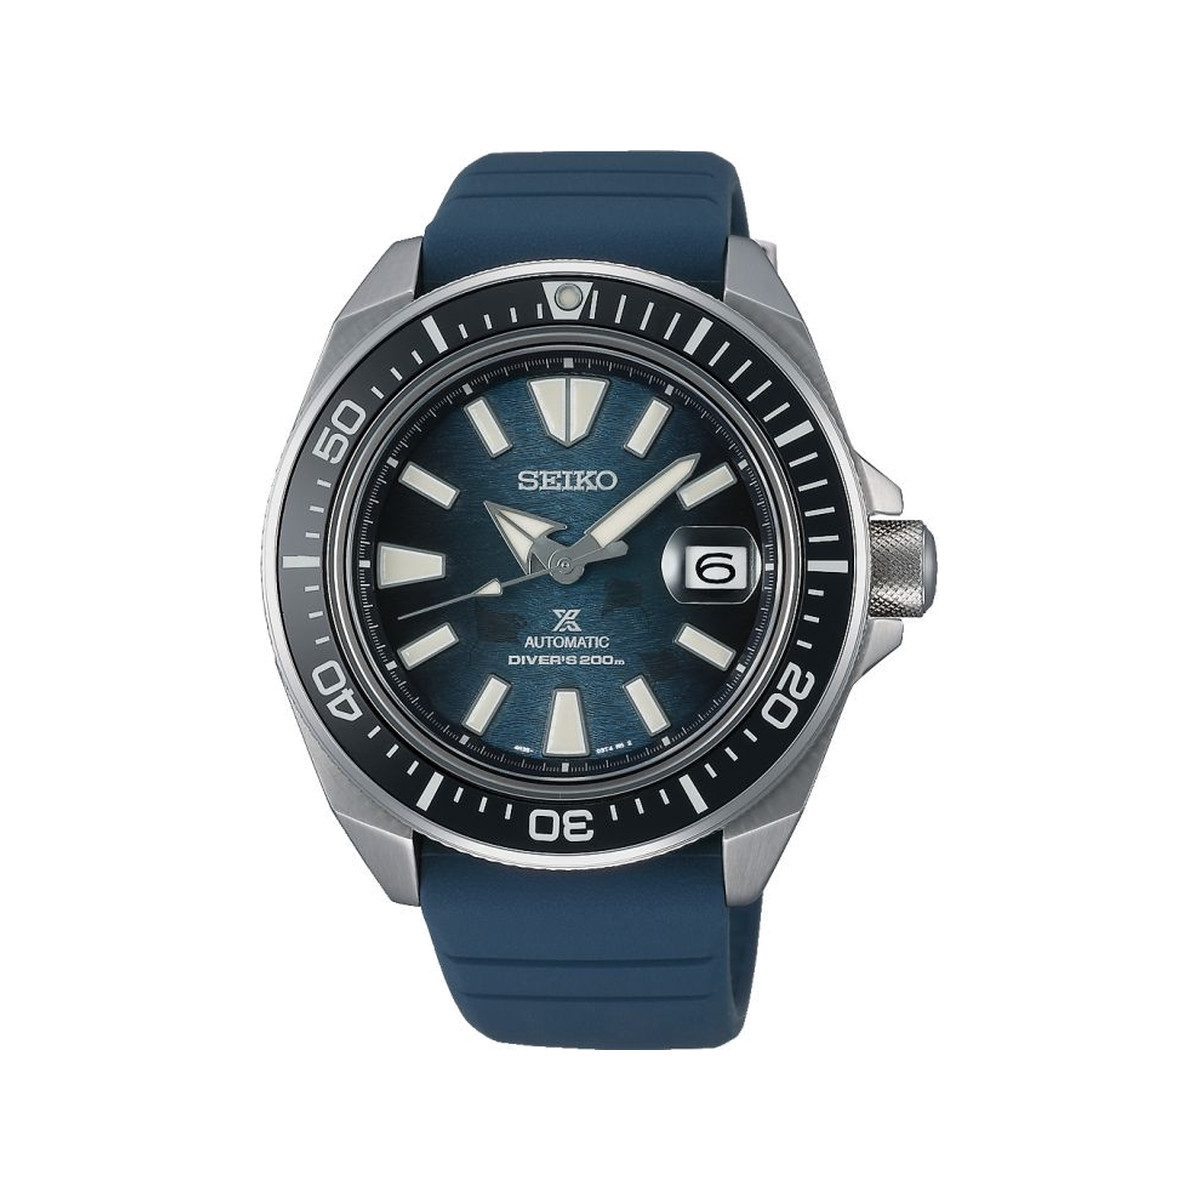 Montre Seiko Prospex homme chronographe automatique acier silicone bleu. Edition limitée